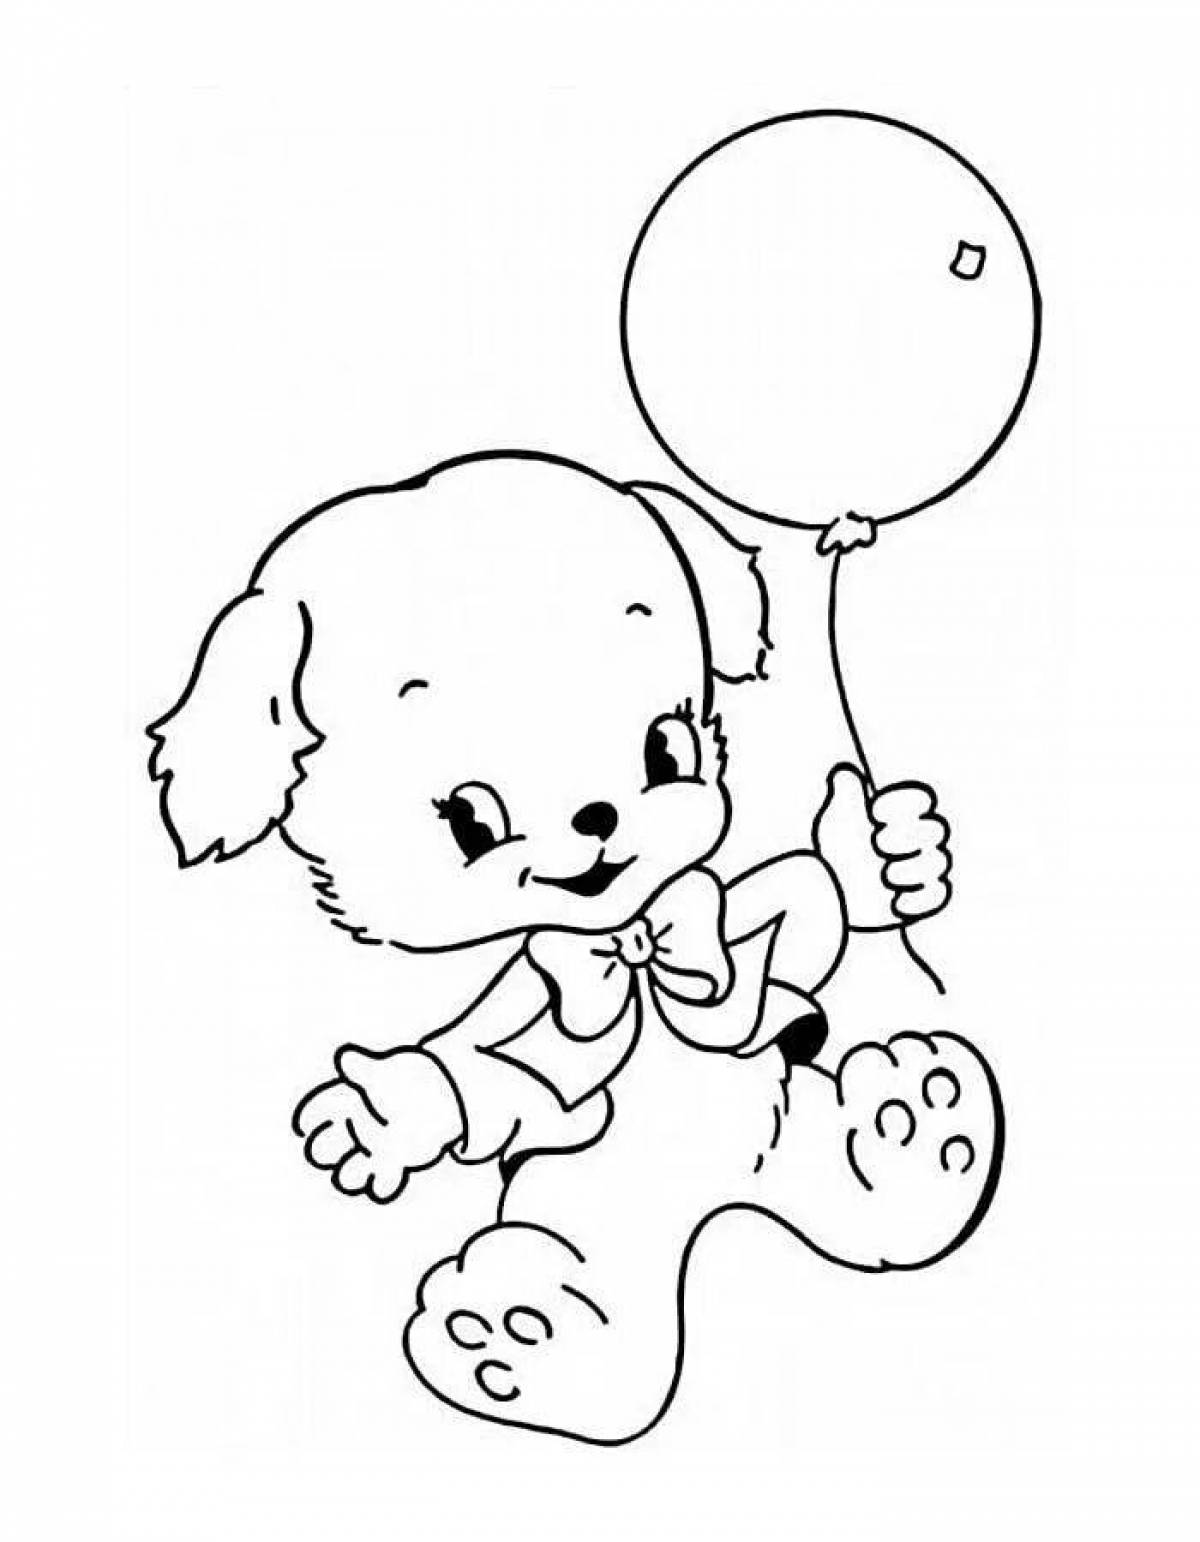 Adorable teddy bear with balloons